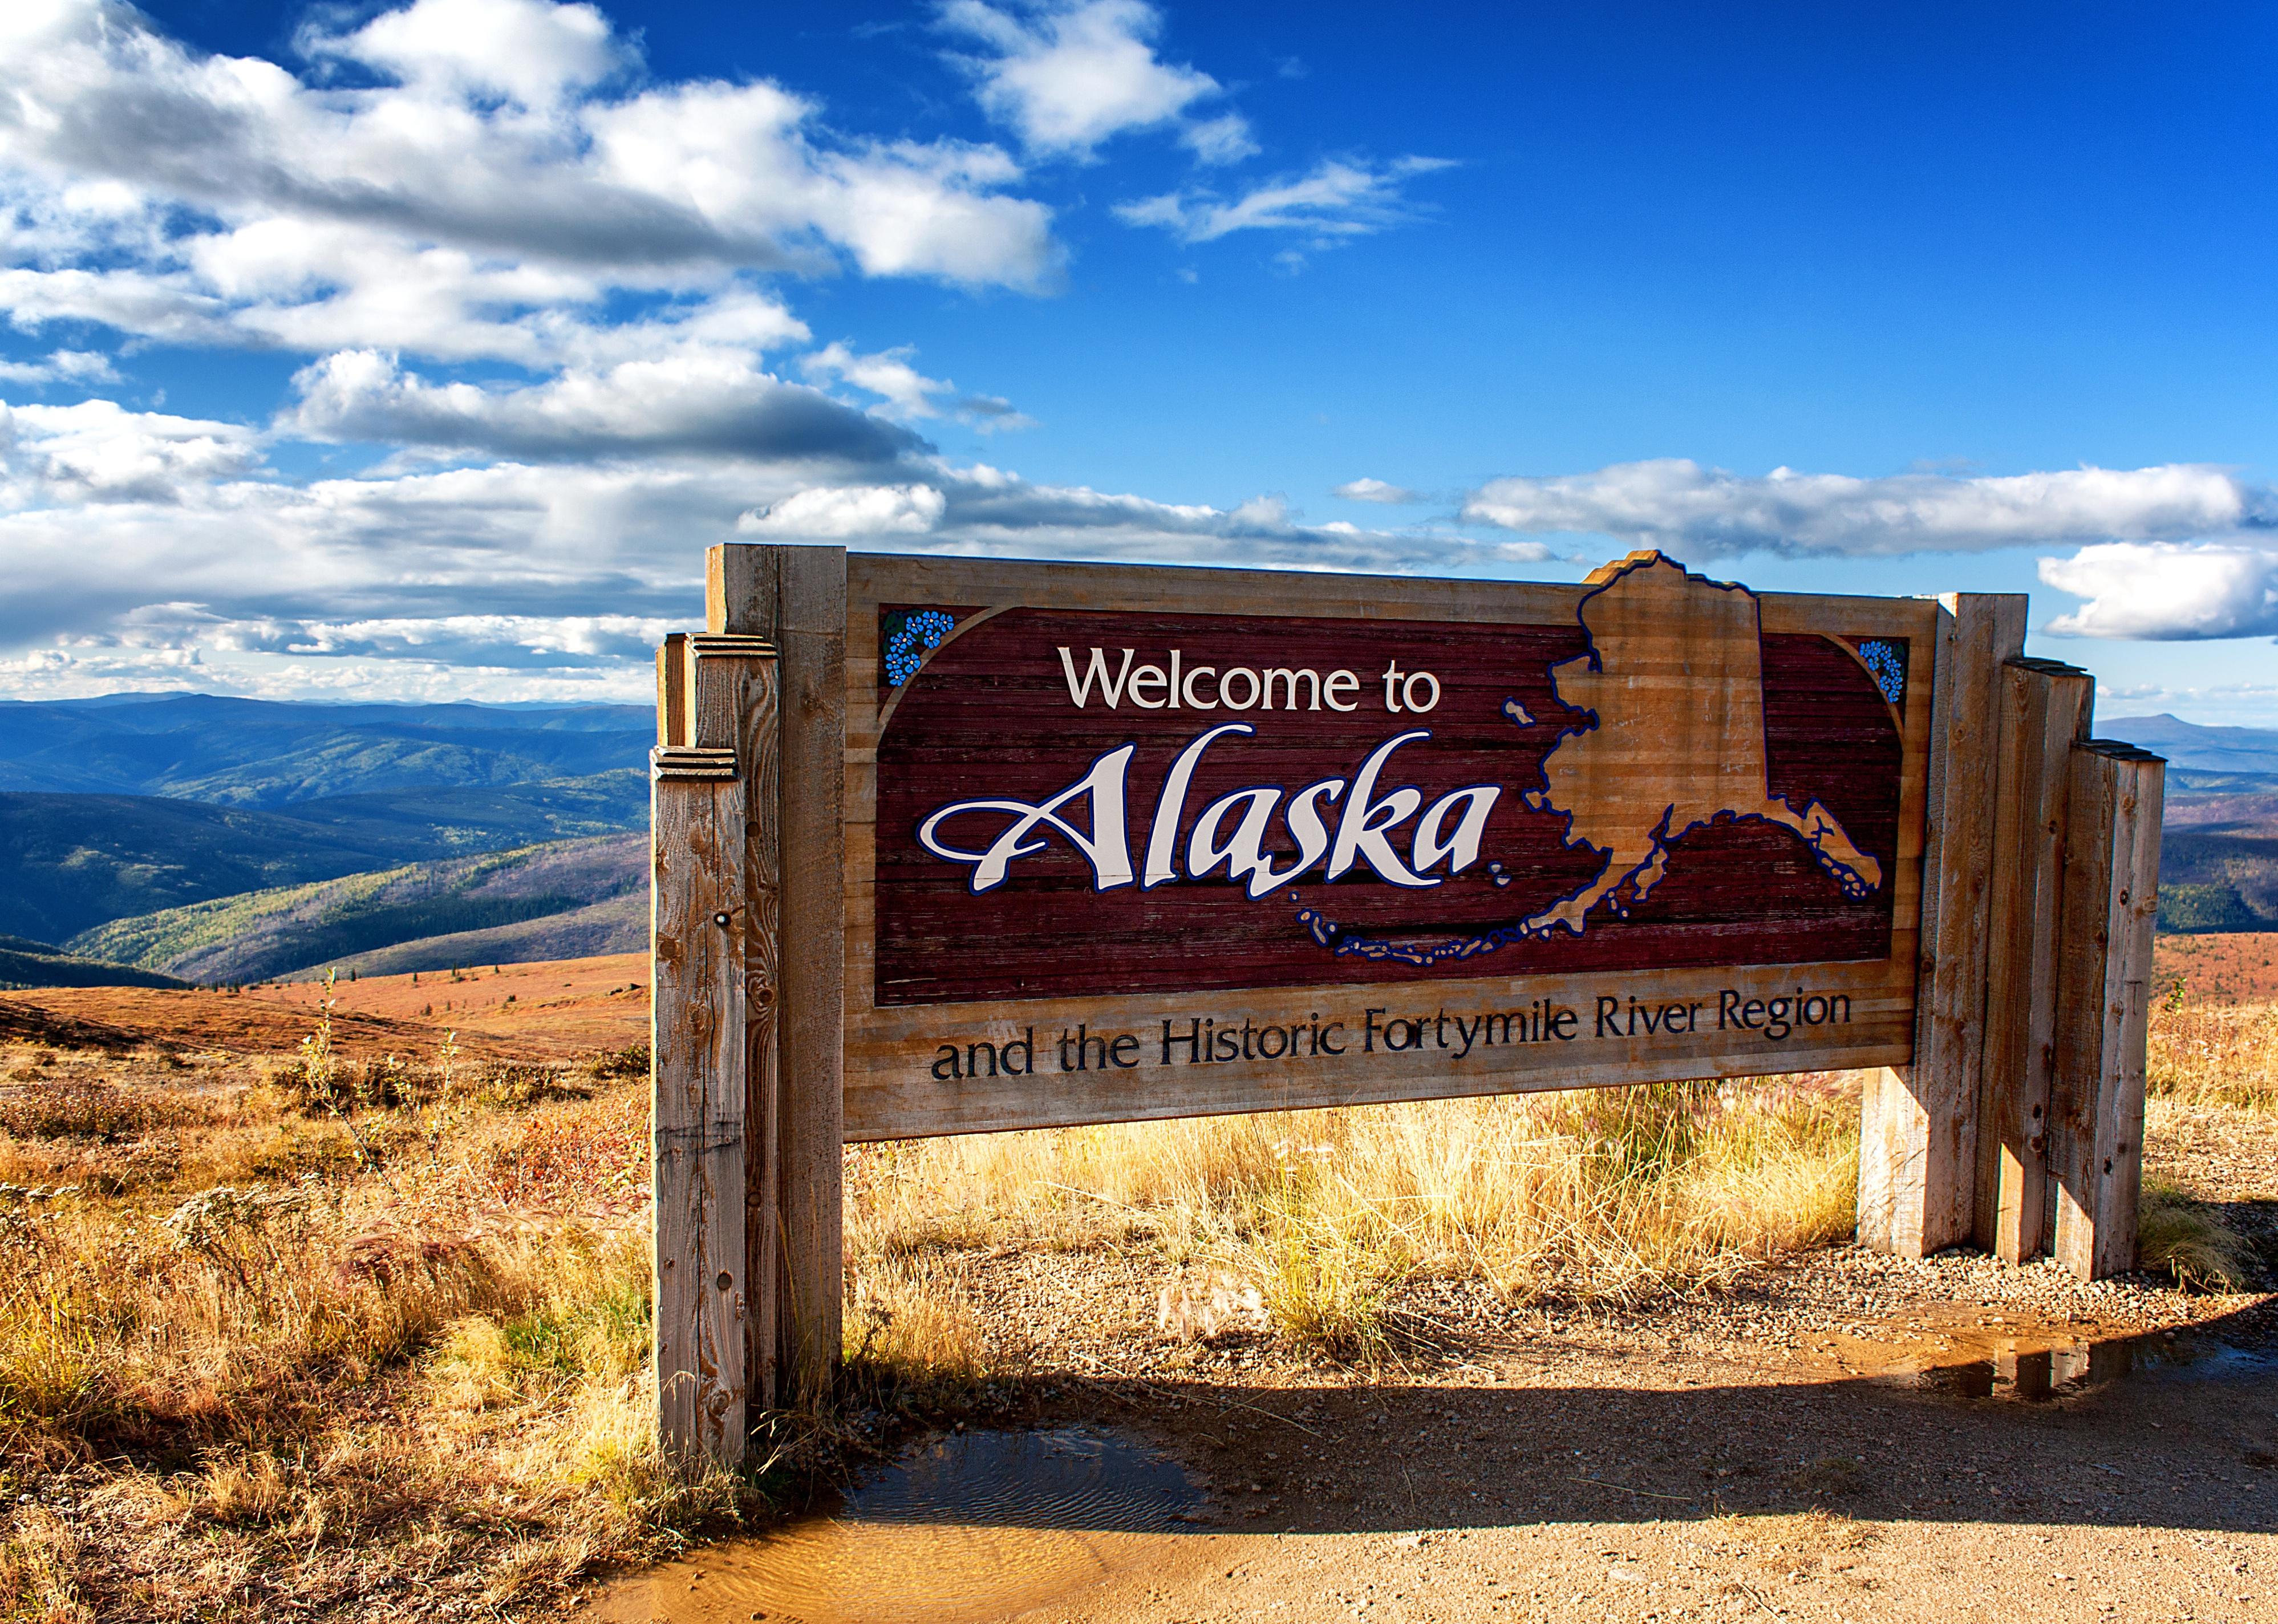 Alaska welcome sign.